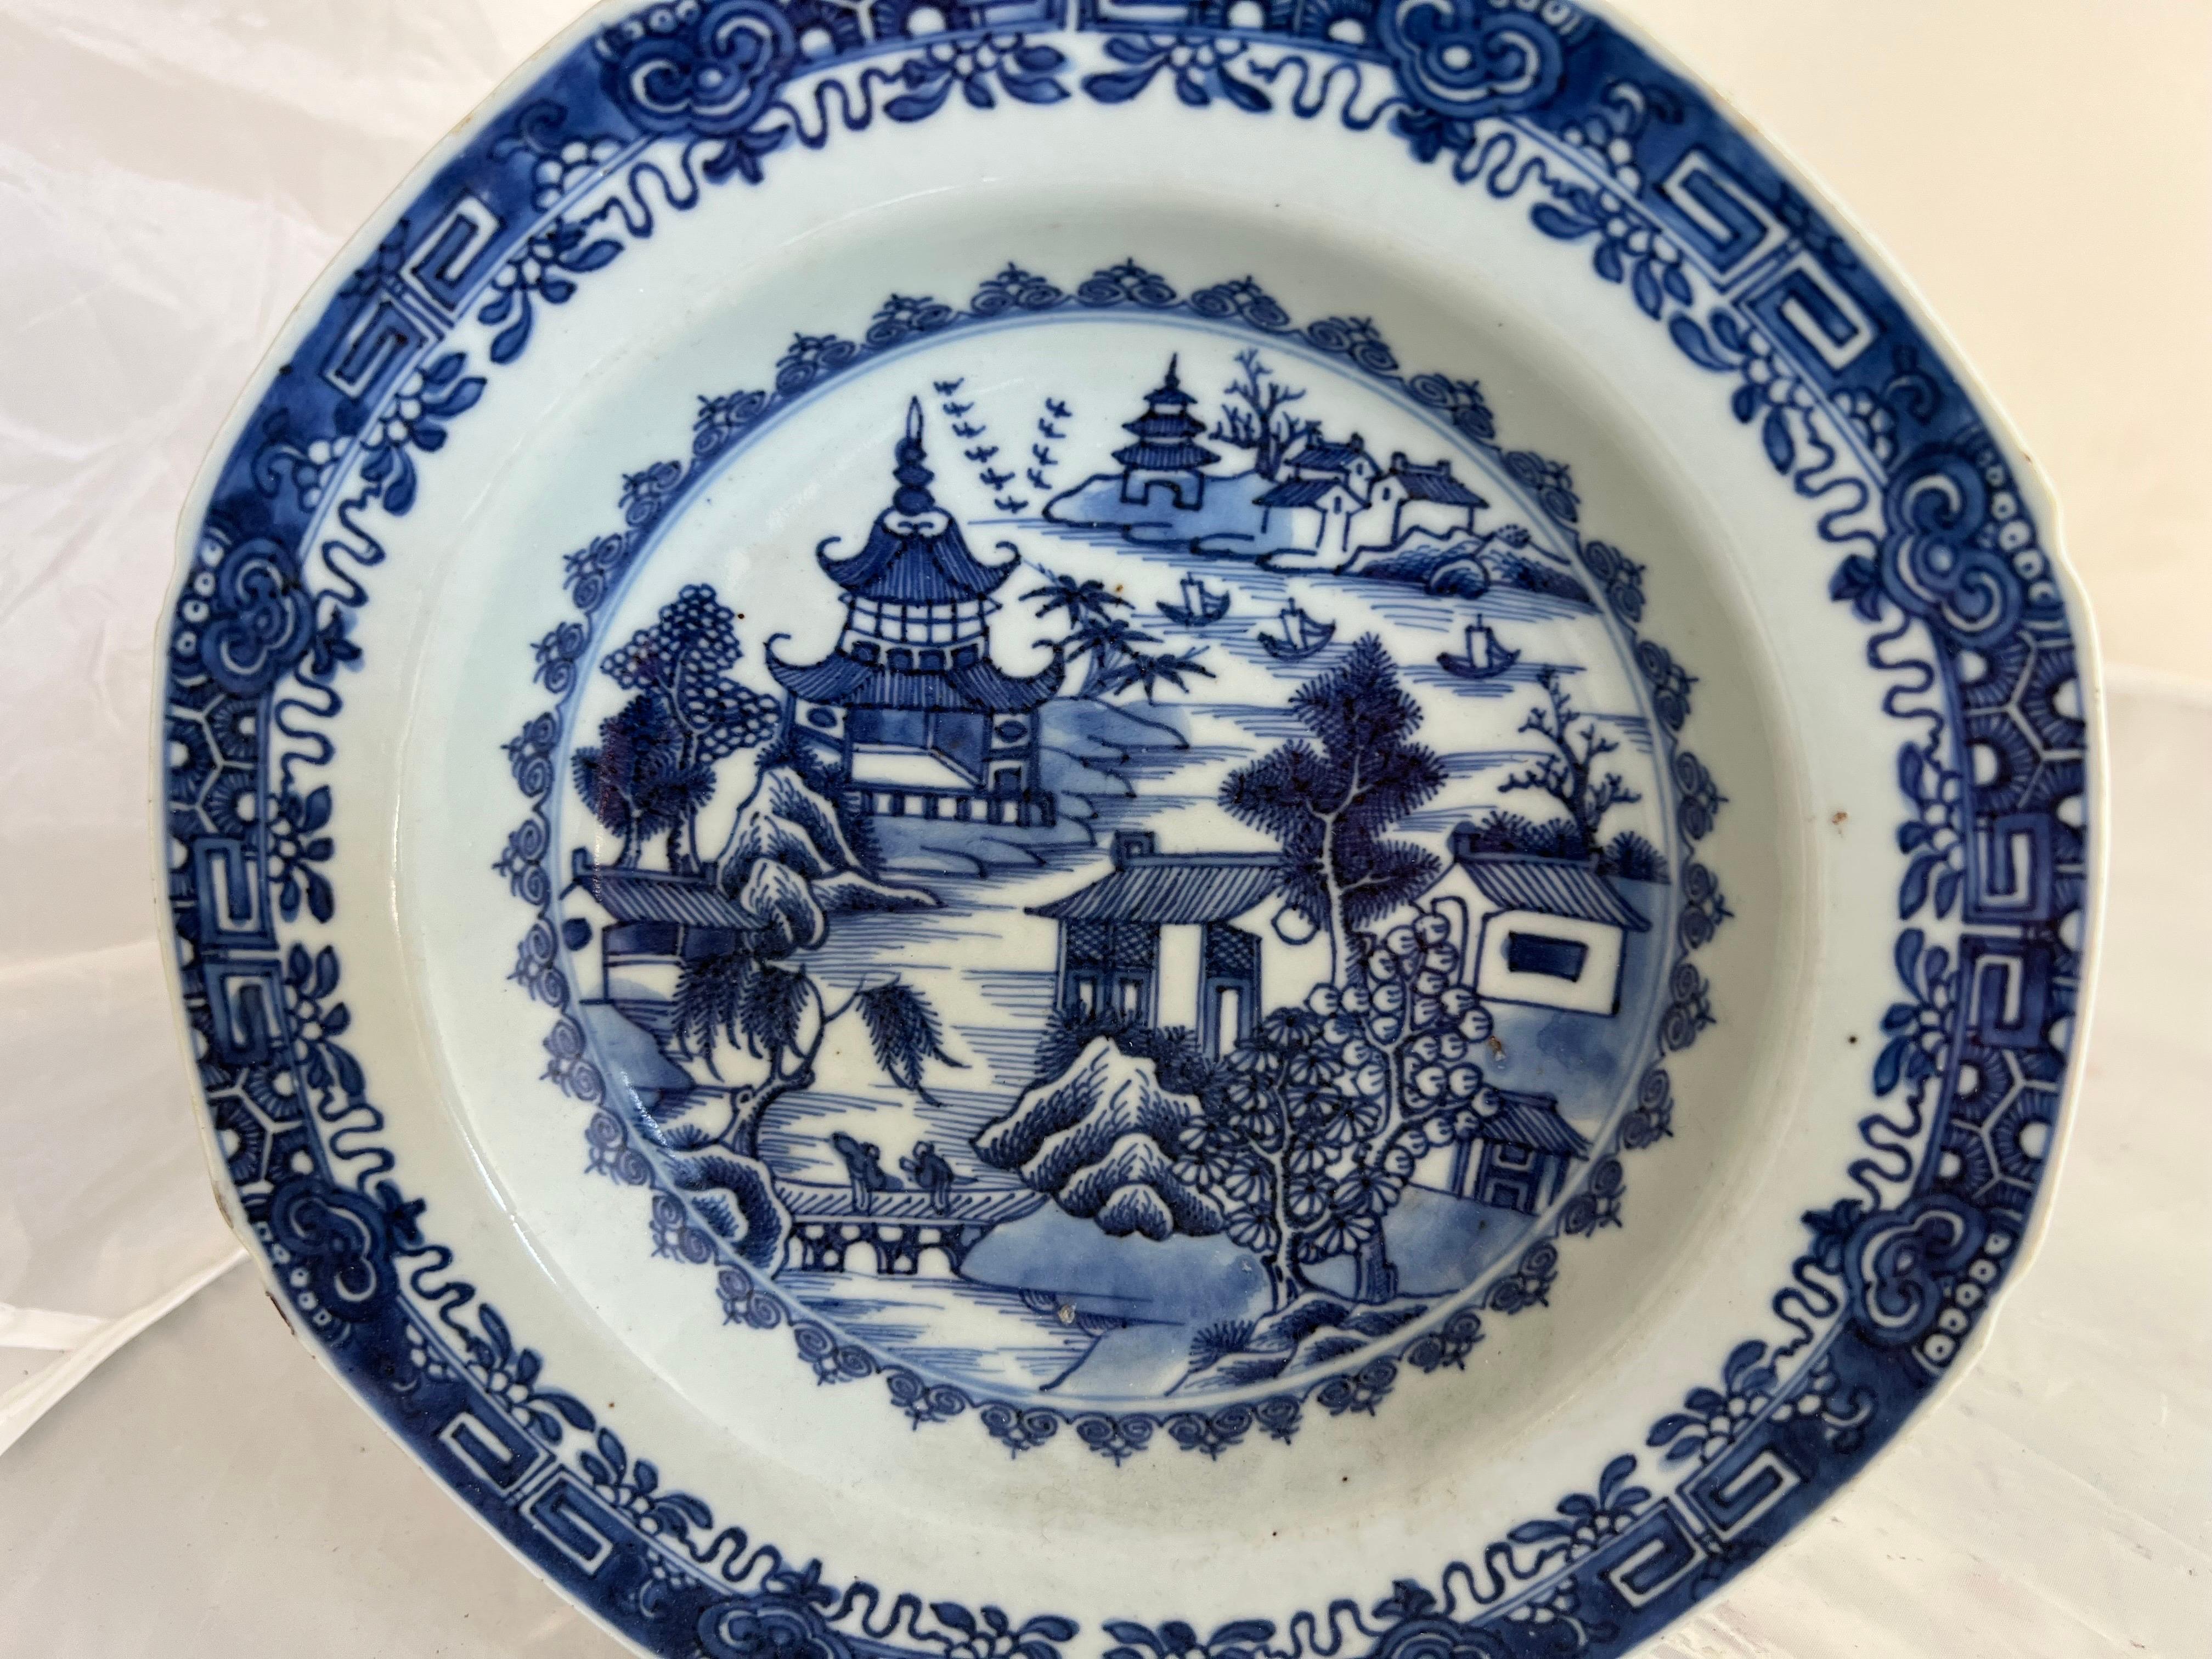 Ein blau-weißer chinesischer Exportteller aus Eisenstein aus dem 18. Jahrhundert, der Szenen mit Figuren, Booten, Pagoden, Häusern und Bäumen zeigt, spiegelt die für diese Zeit charakteristische Komplexität und Kunstfertigkeit wider.  Auf den